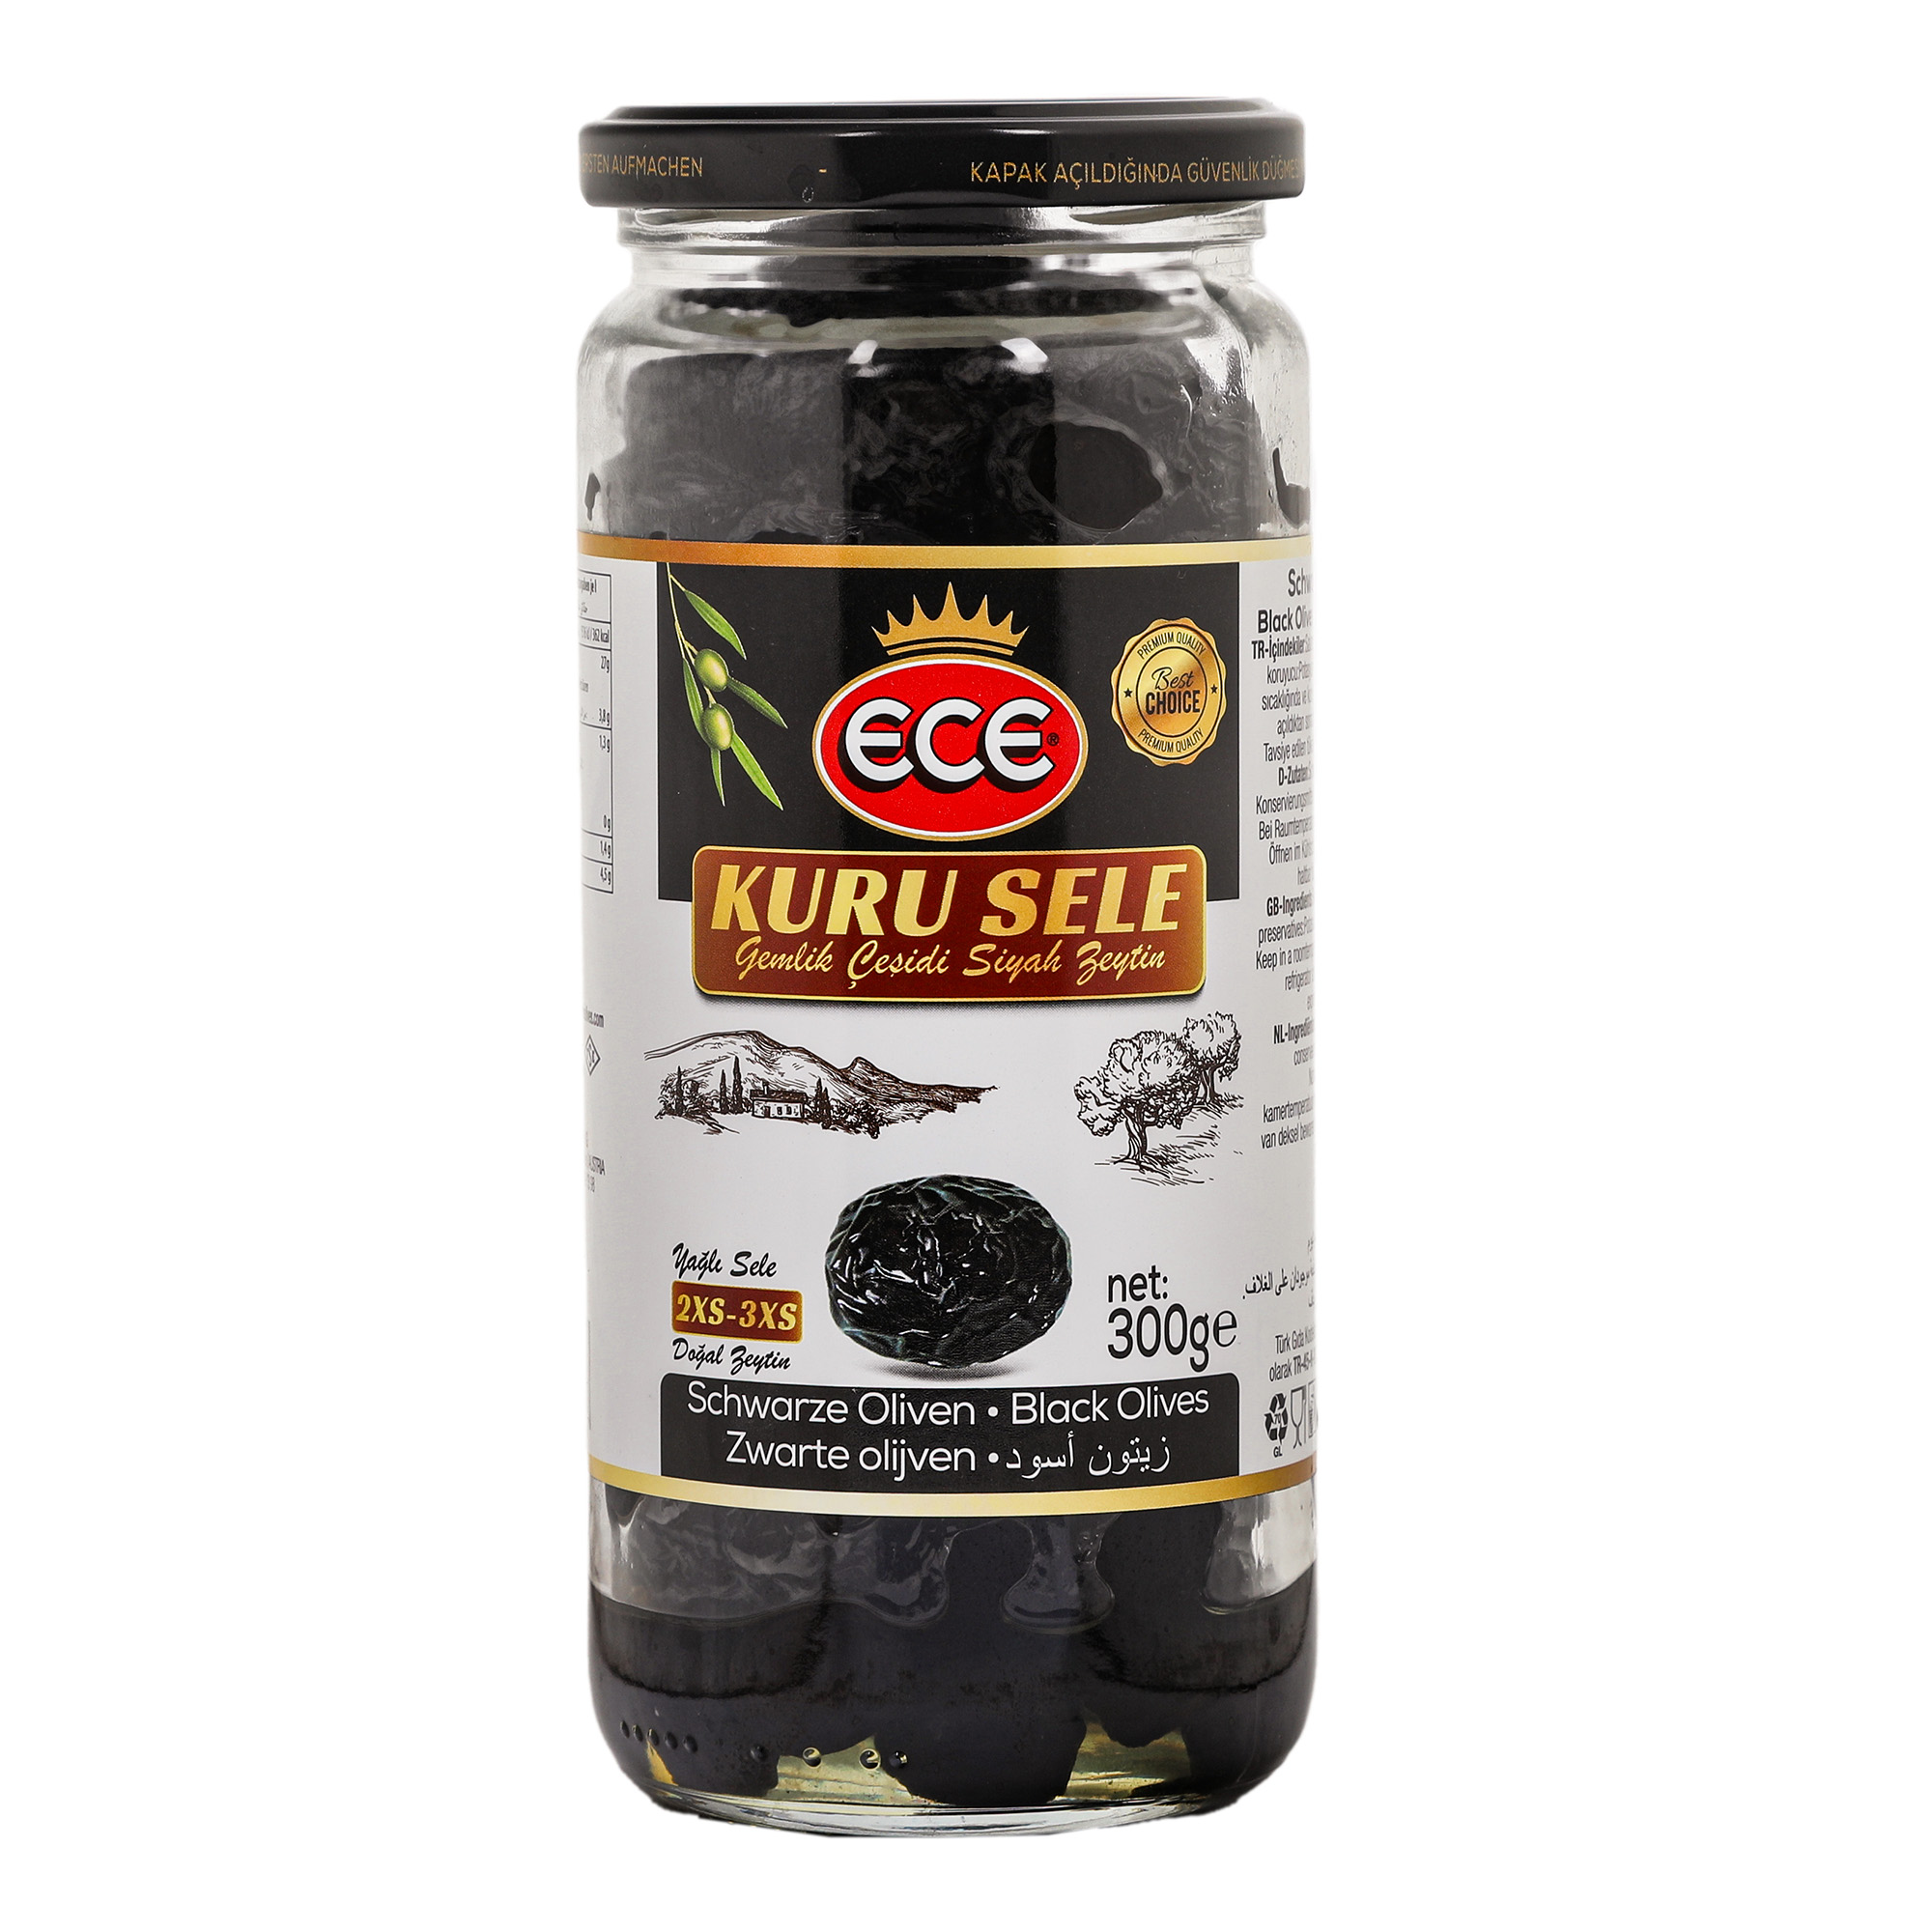 Оливки черные Ece Kuru Sele в масле с косточкой, 300 г маслины delphi натуральные с косточкой в рассоле 350 г